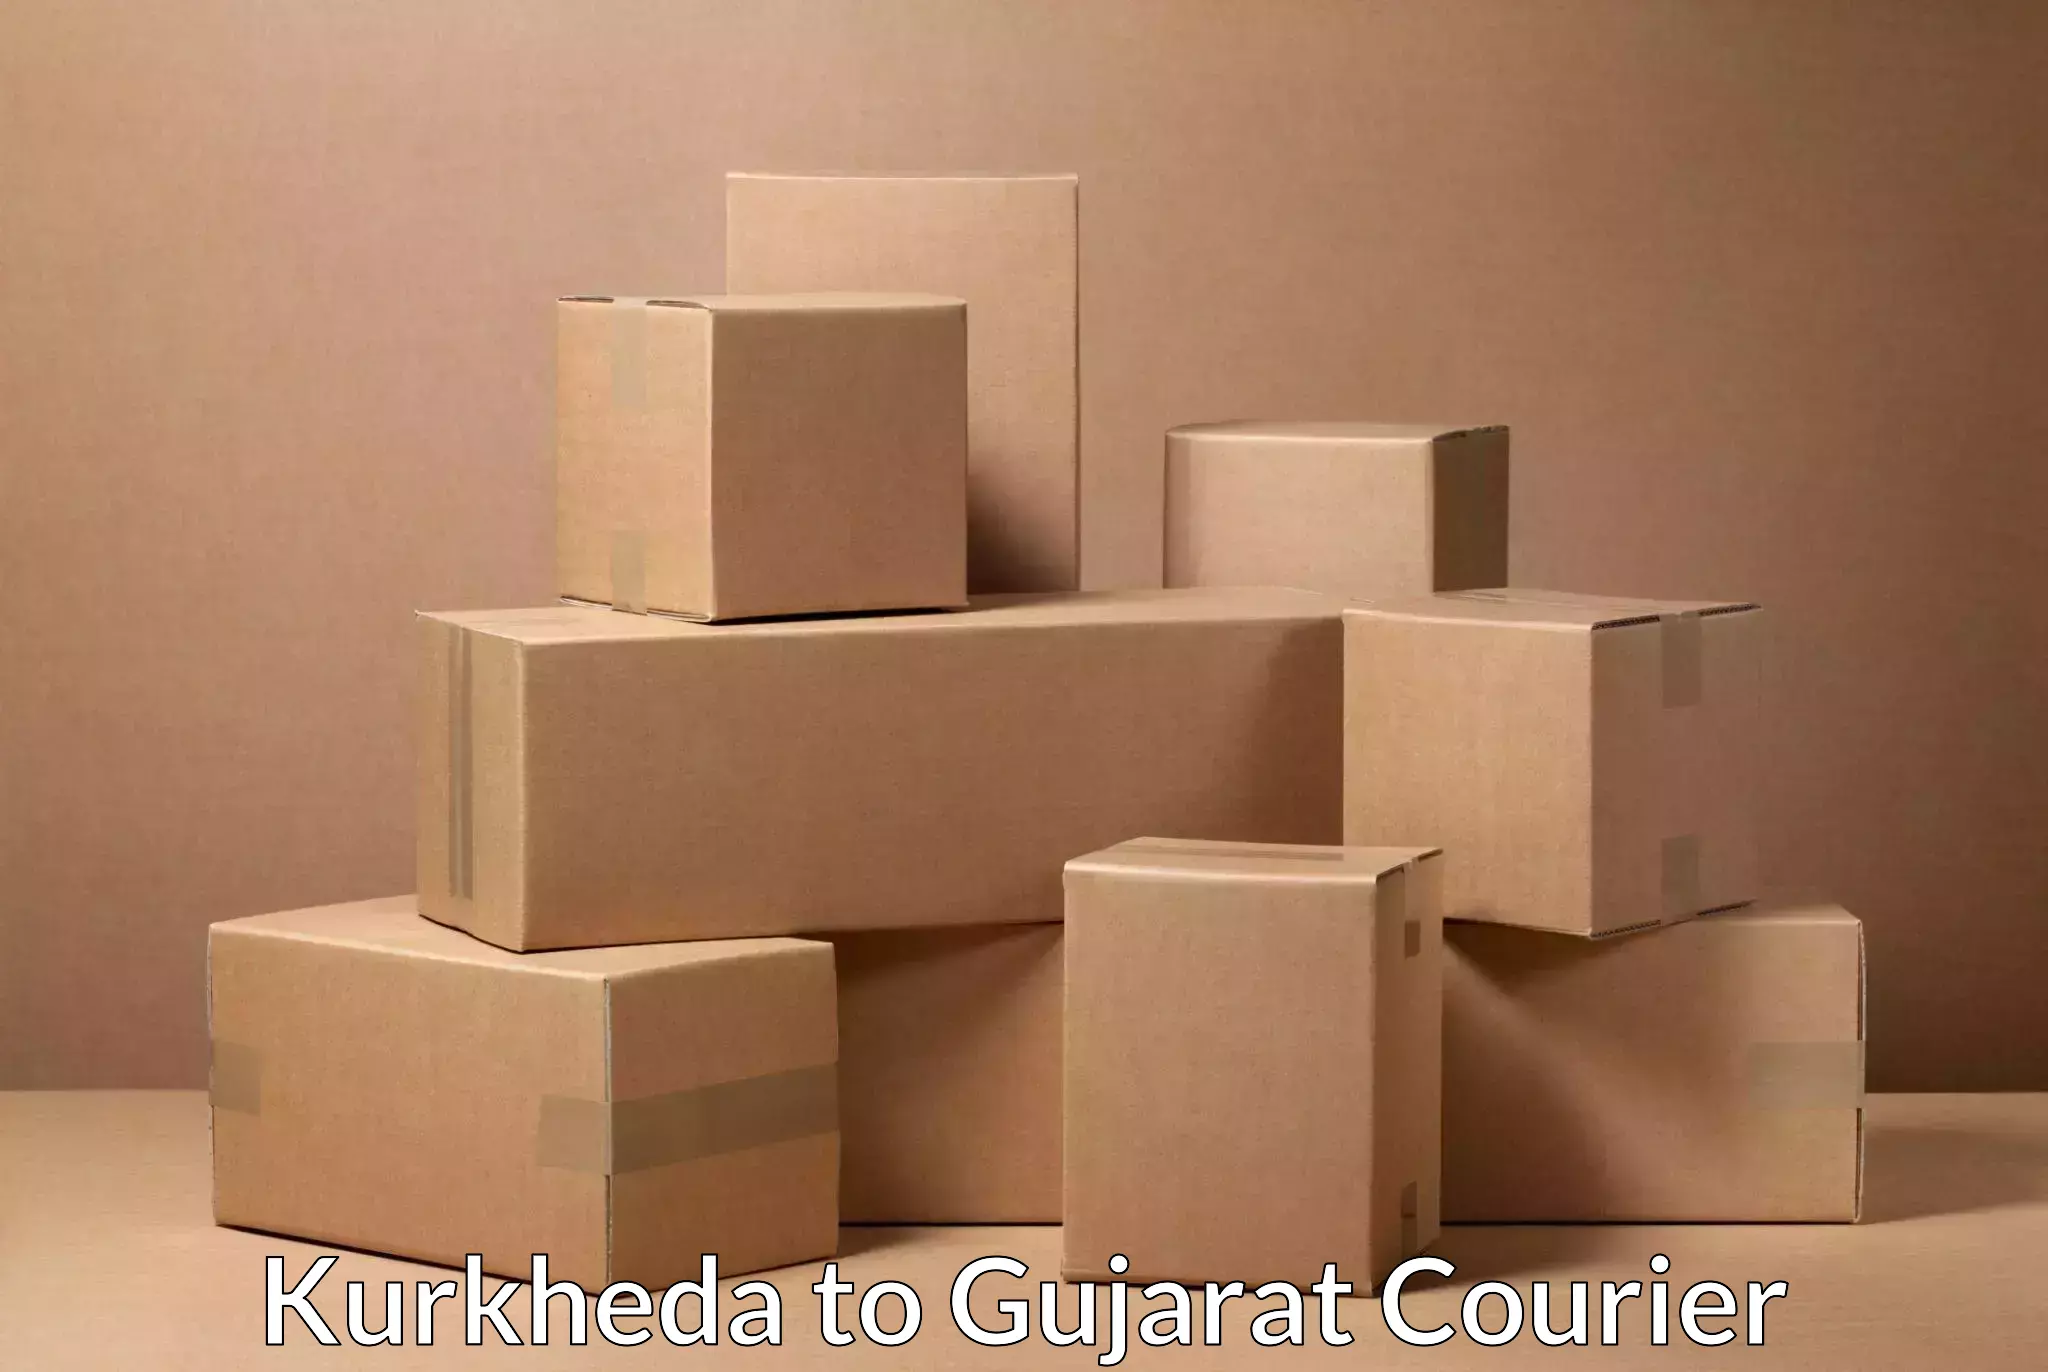 Express courier facilities Kurkheda to Unjha